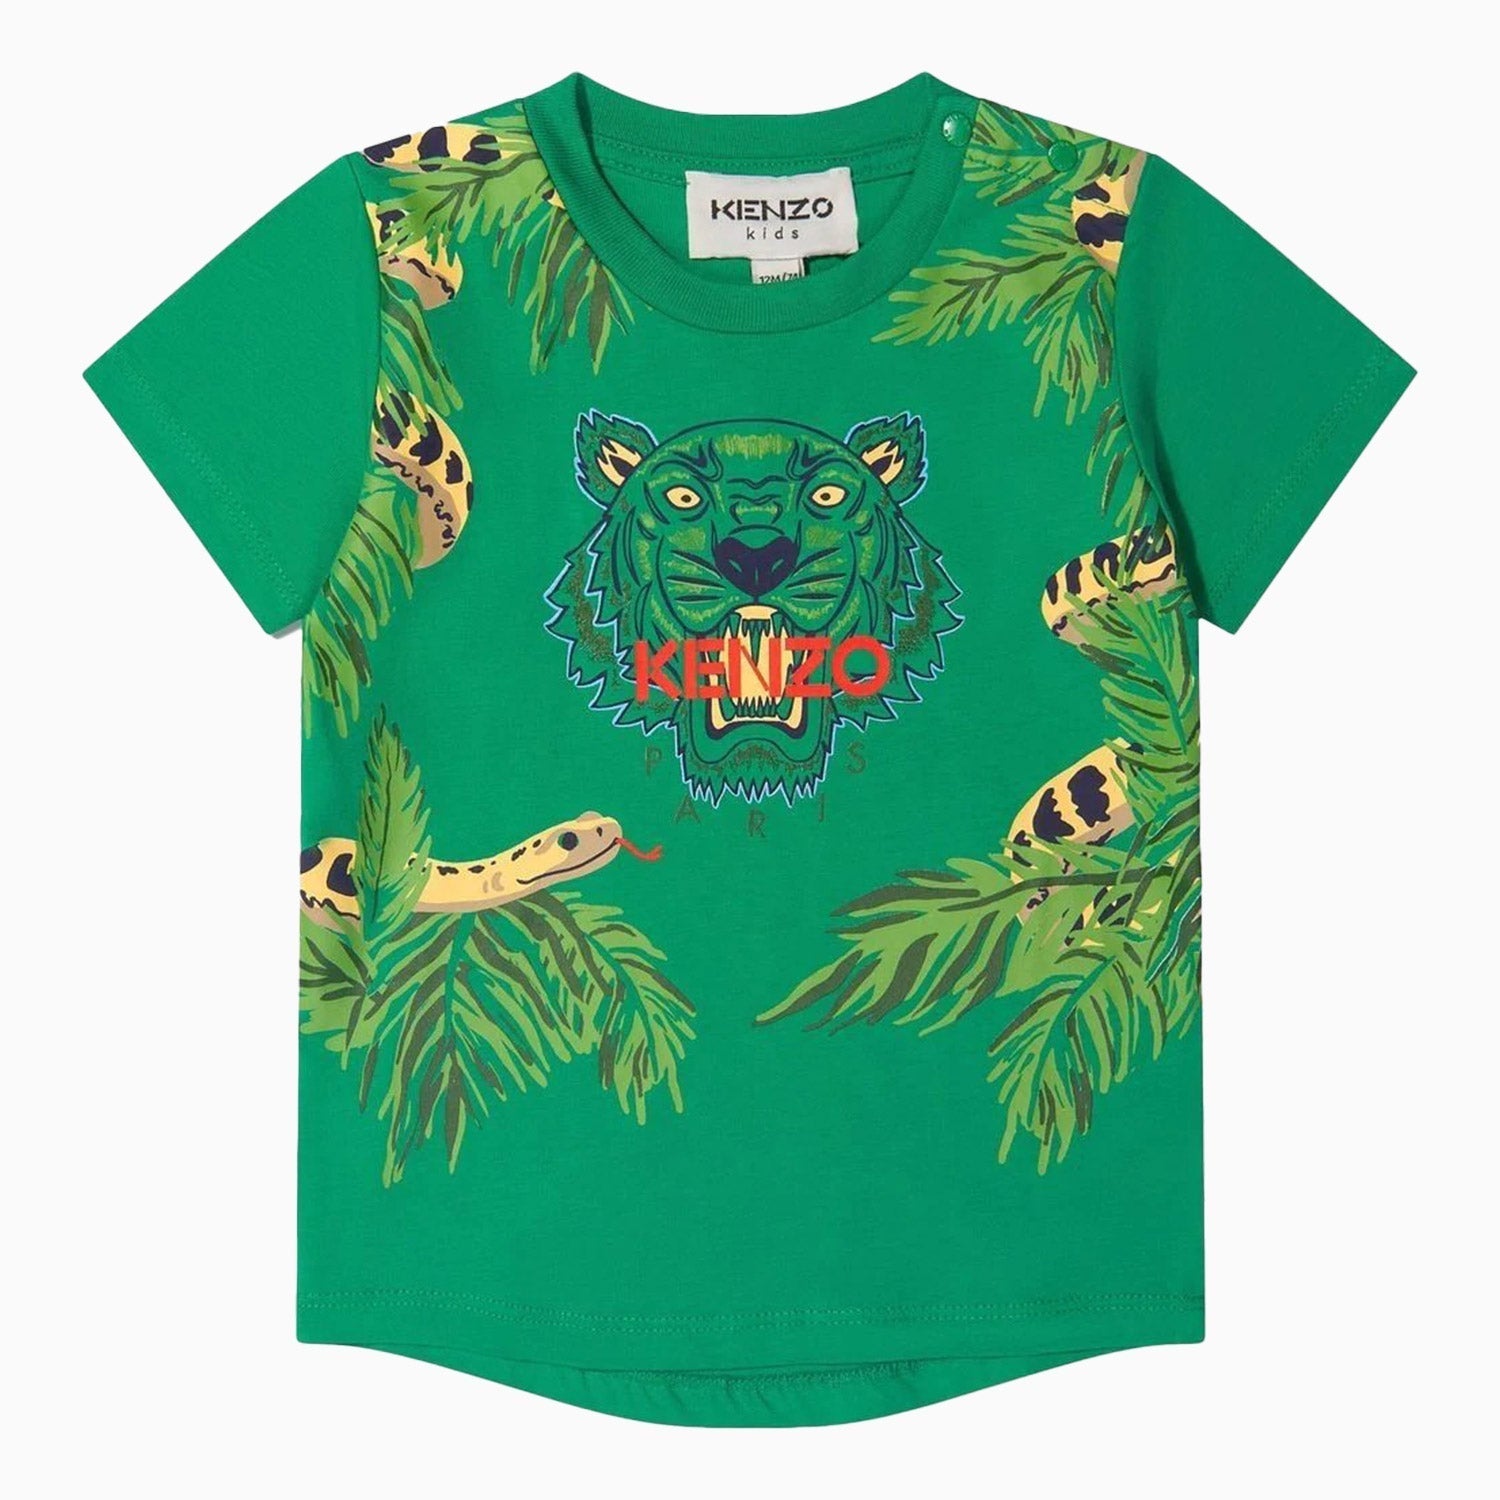 kenzo-kids-tiger-motif-logo-t-shirt-toddlers-k05387-719